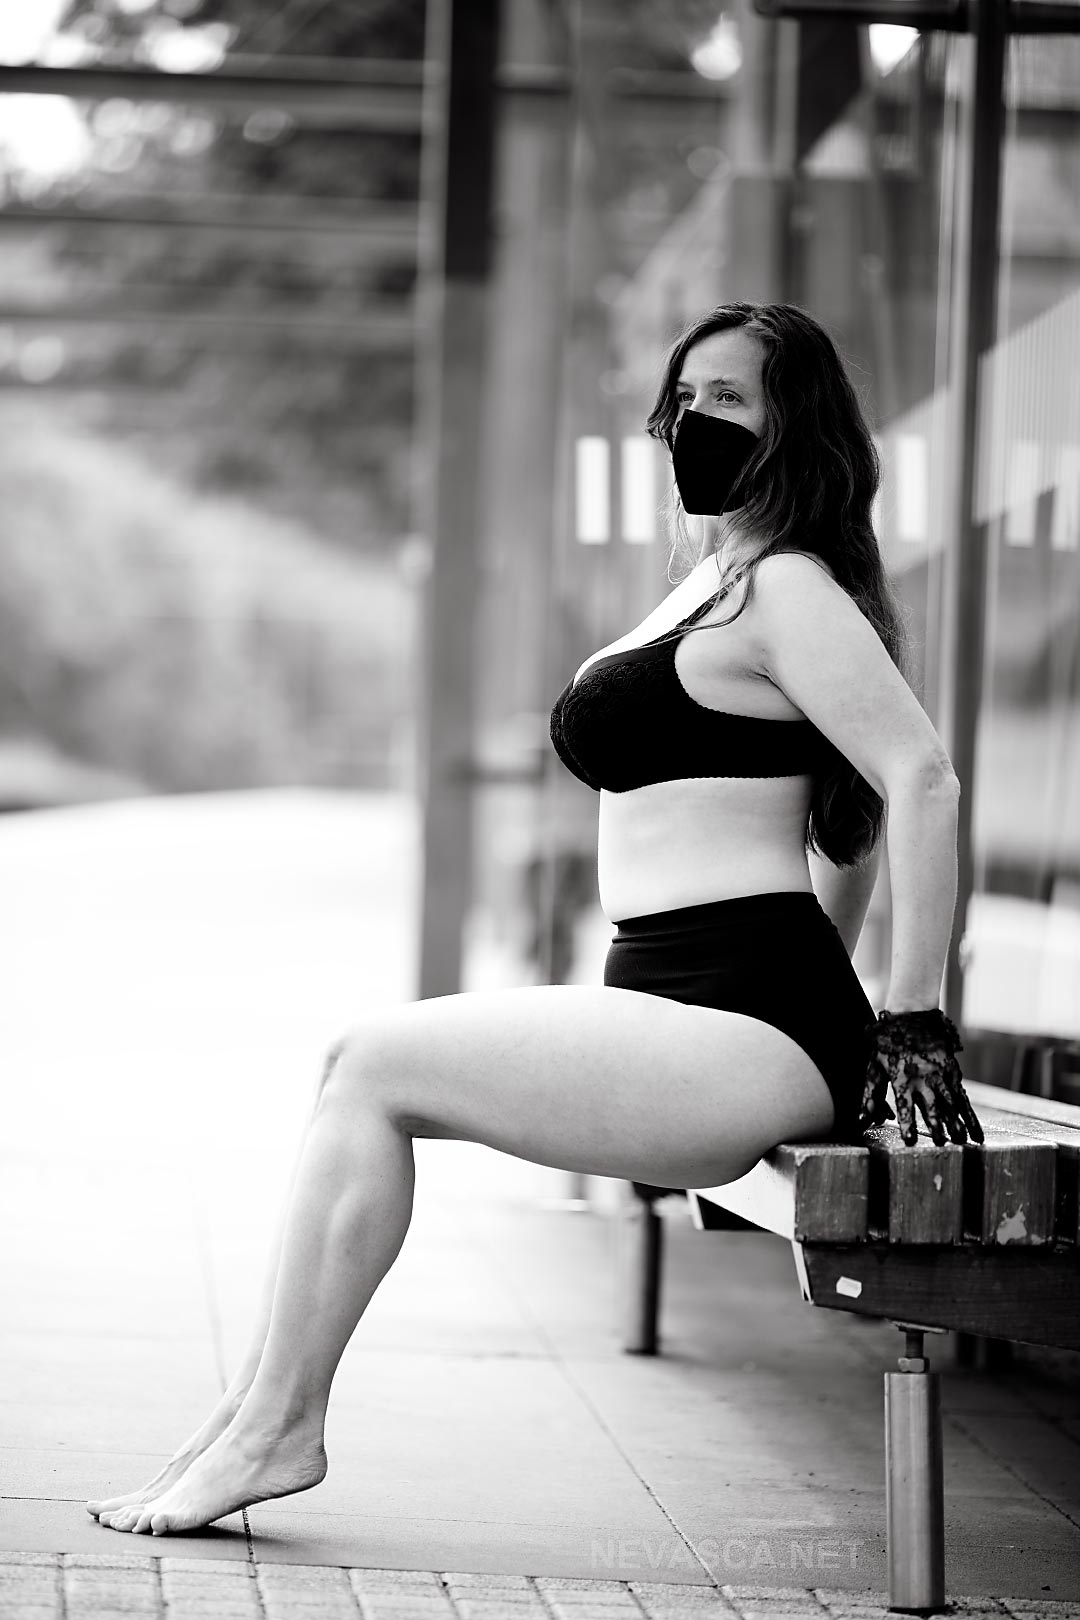 Eine Frau mit Maske sitzt auf einer Bank in einer Haltestelle.